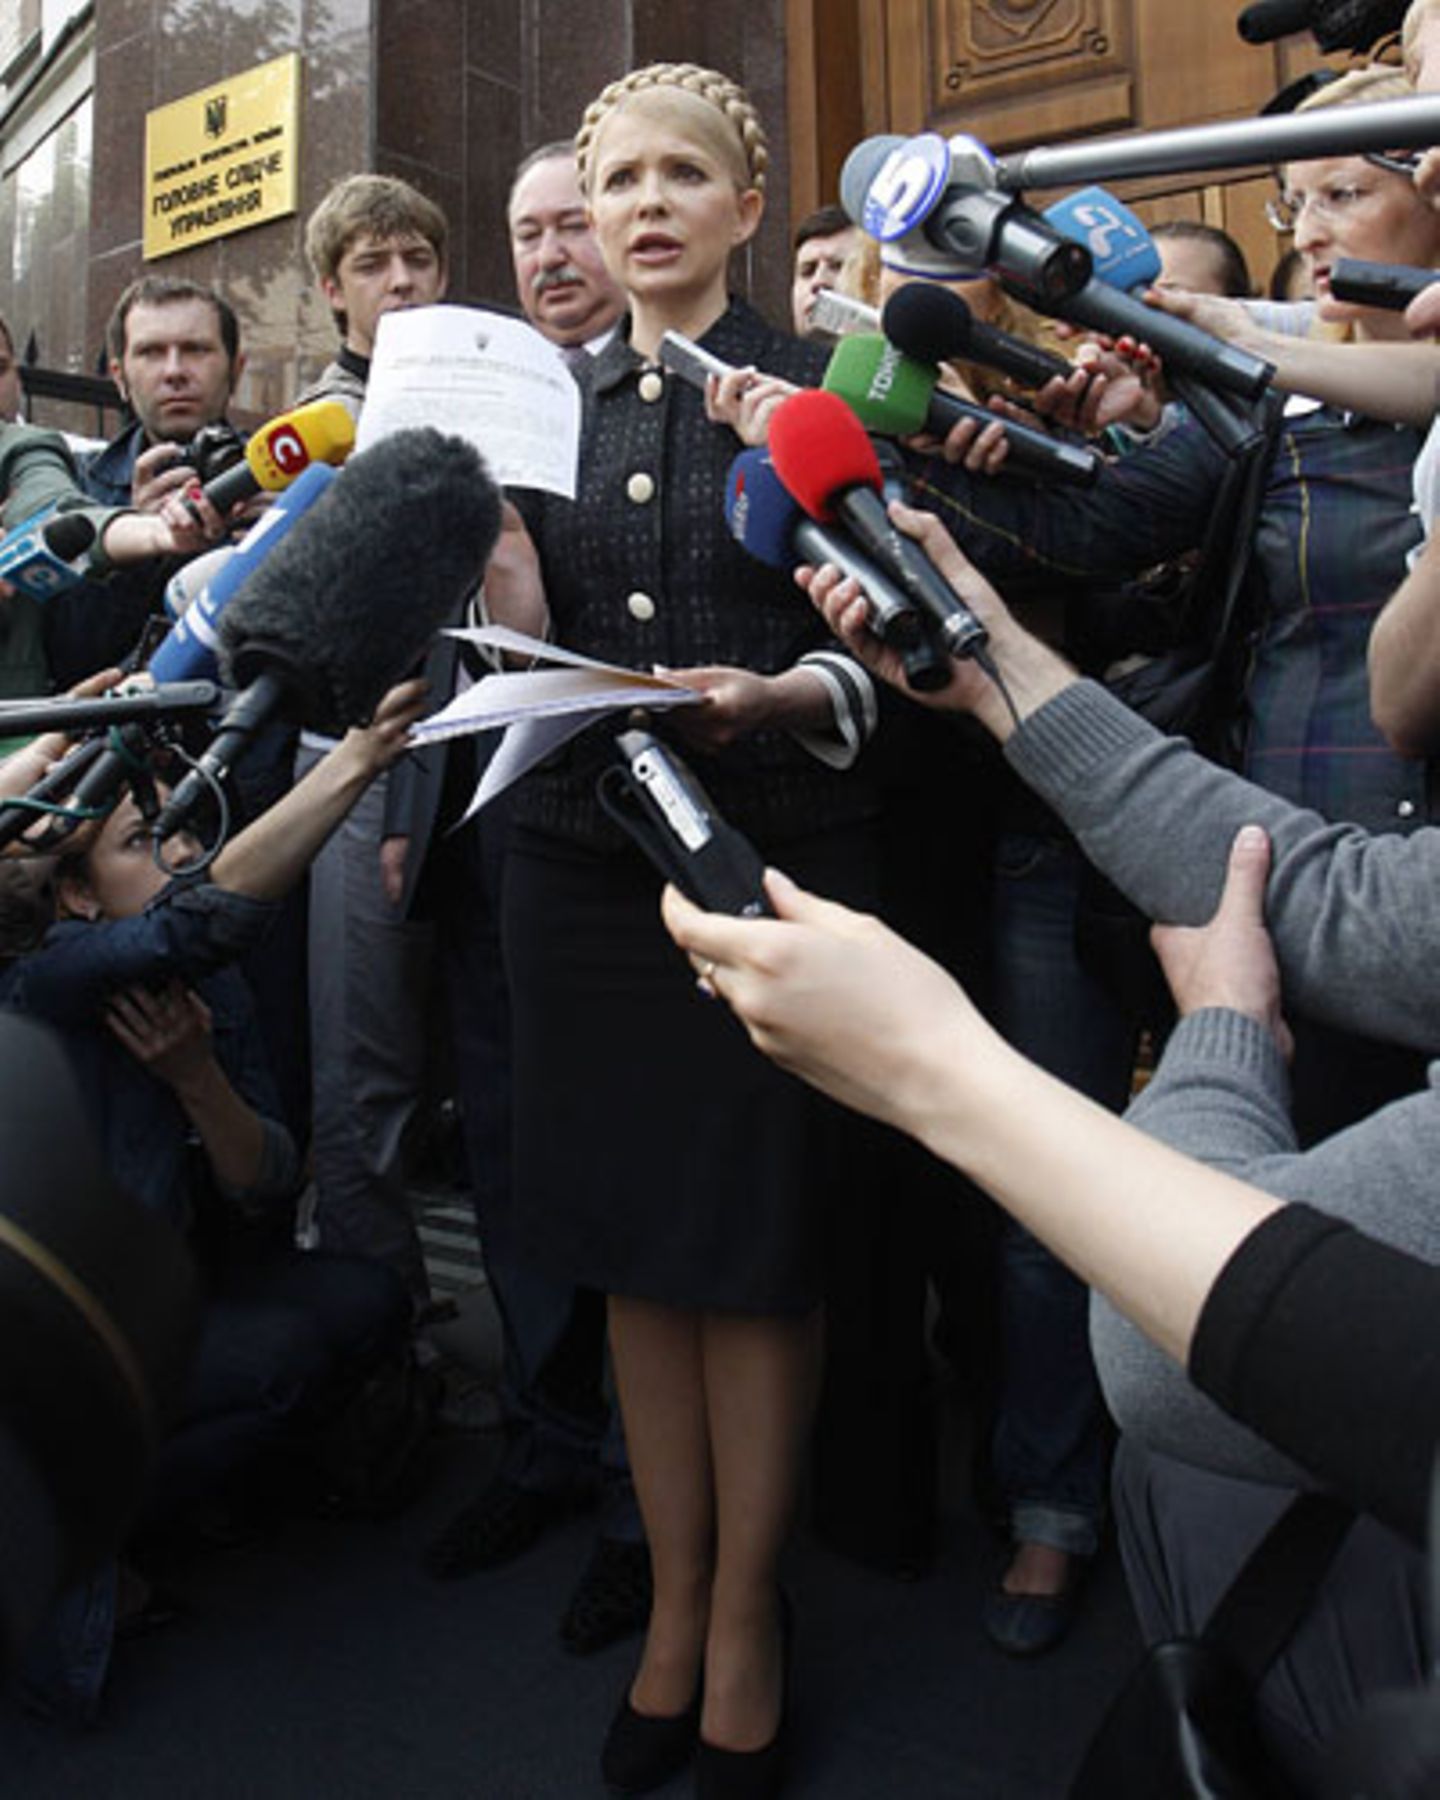 Die Ex-Premierministerin vor dem Gerichtsgebäude in Kiew im Jahr 2010. Kurz nach ihrem Abgang als Premierministerin wurden gegen sie mehrere Strafverfahren eingeleitet.